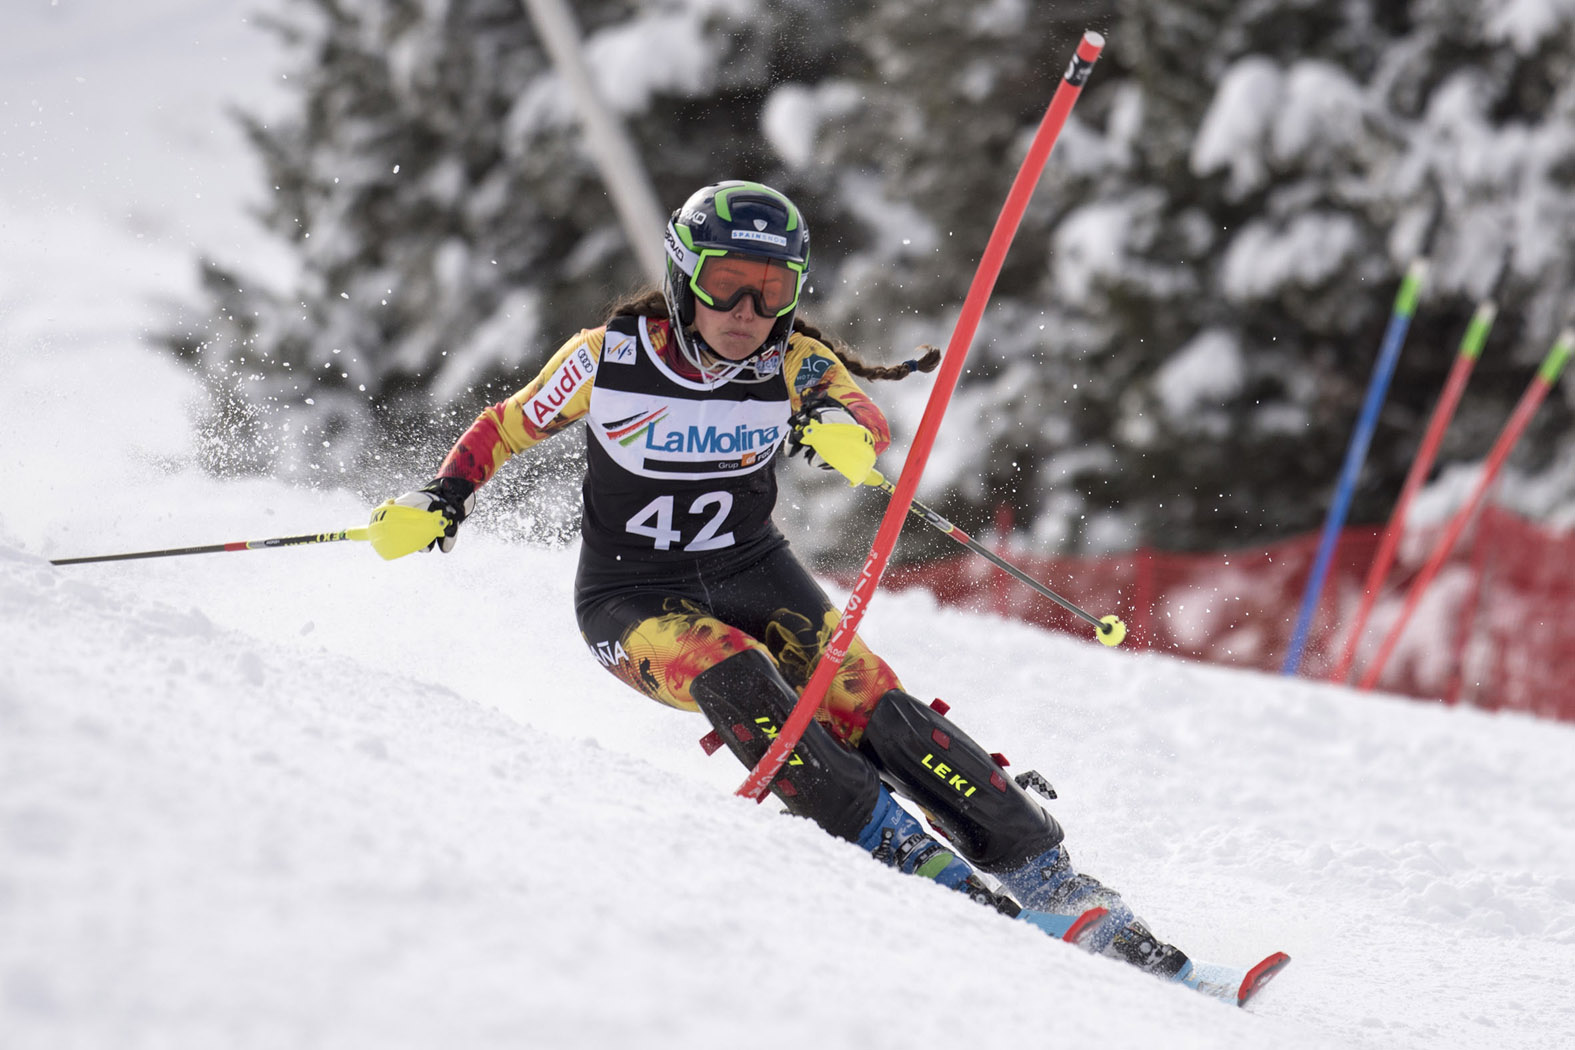 Top 30 para Joaquim Salarich y Alex Puente en el slalom final de Copa de Europa FIS en La Molina